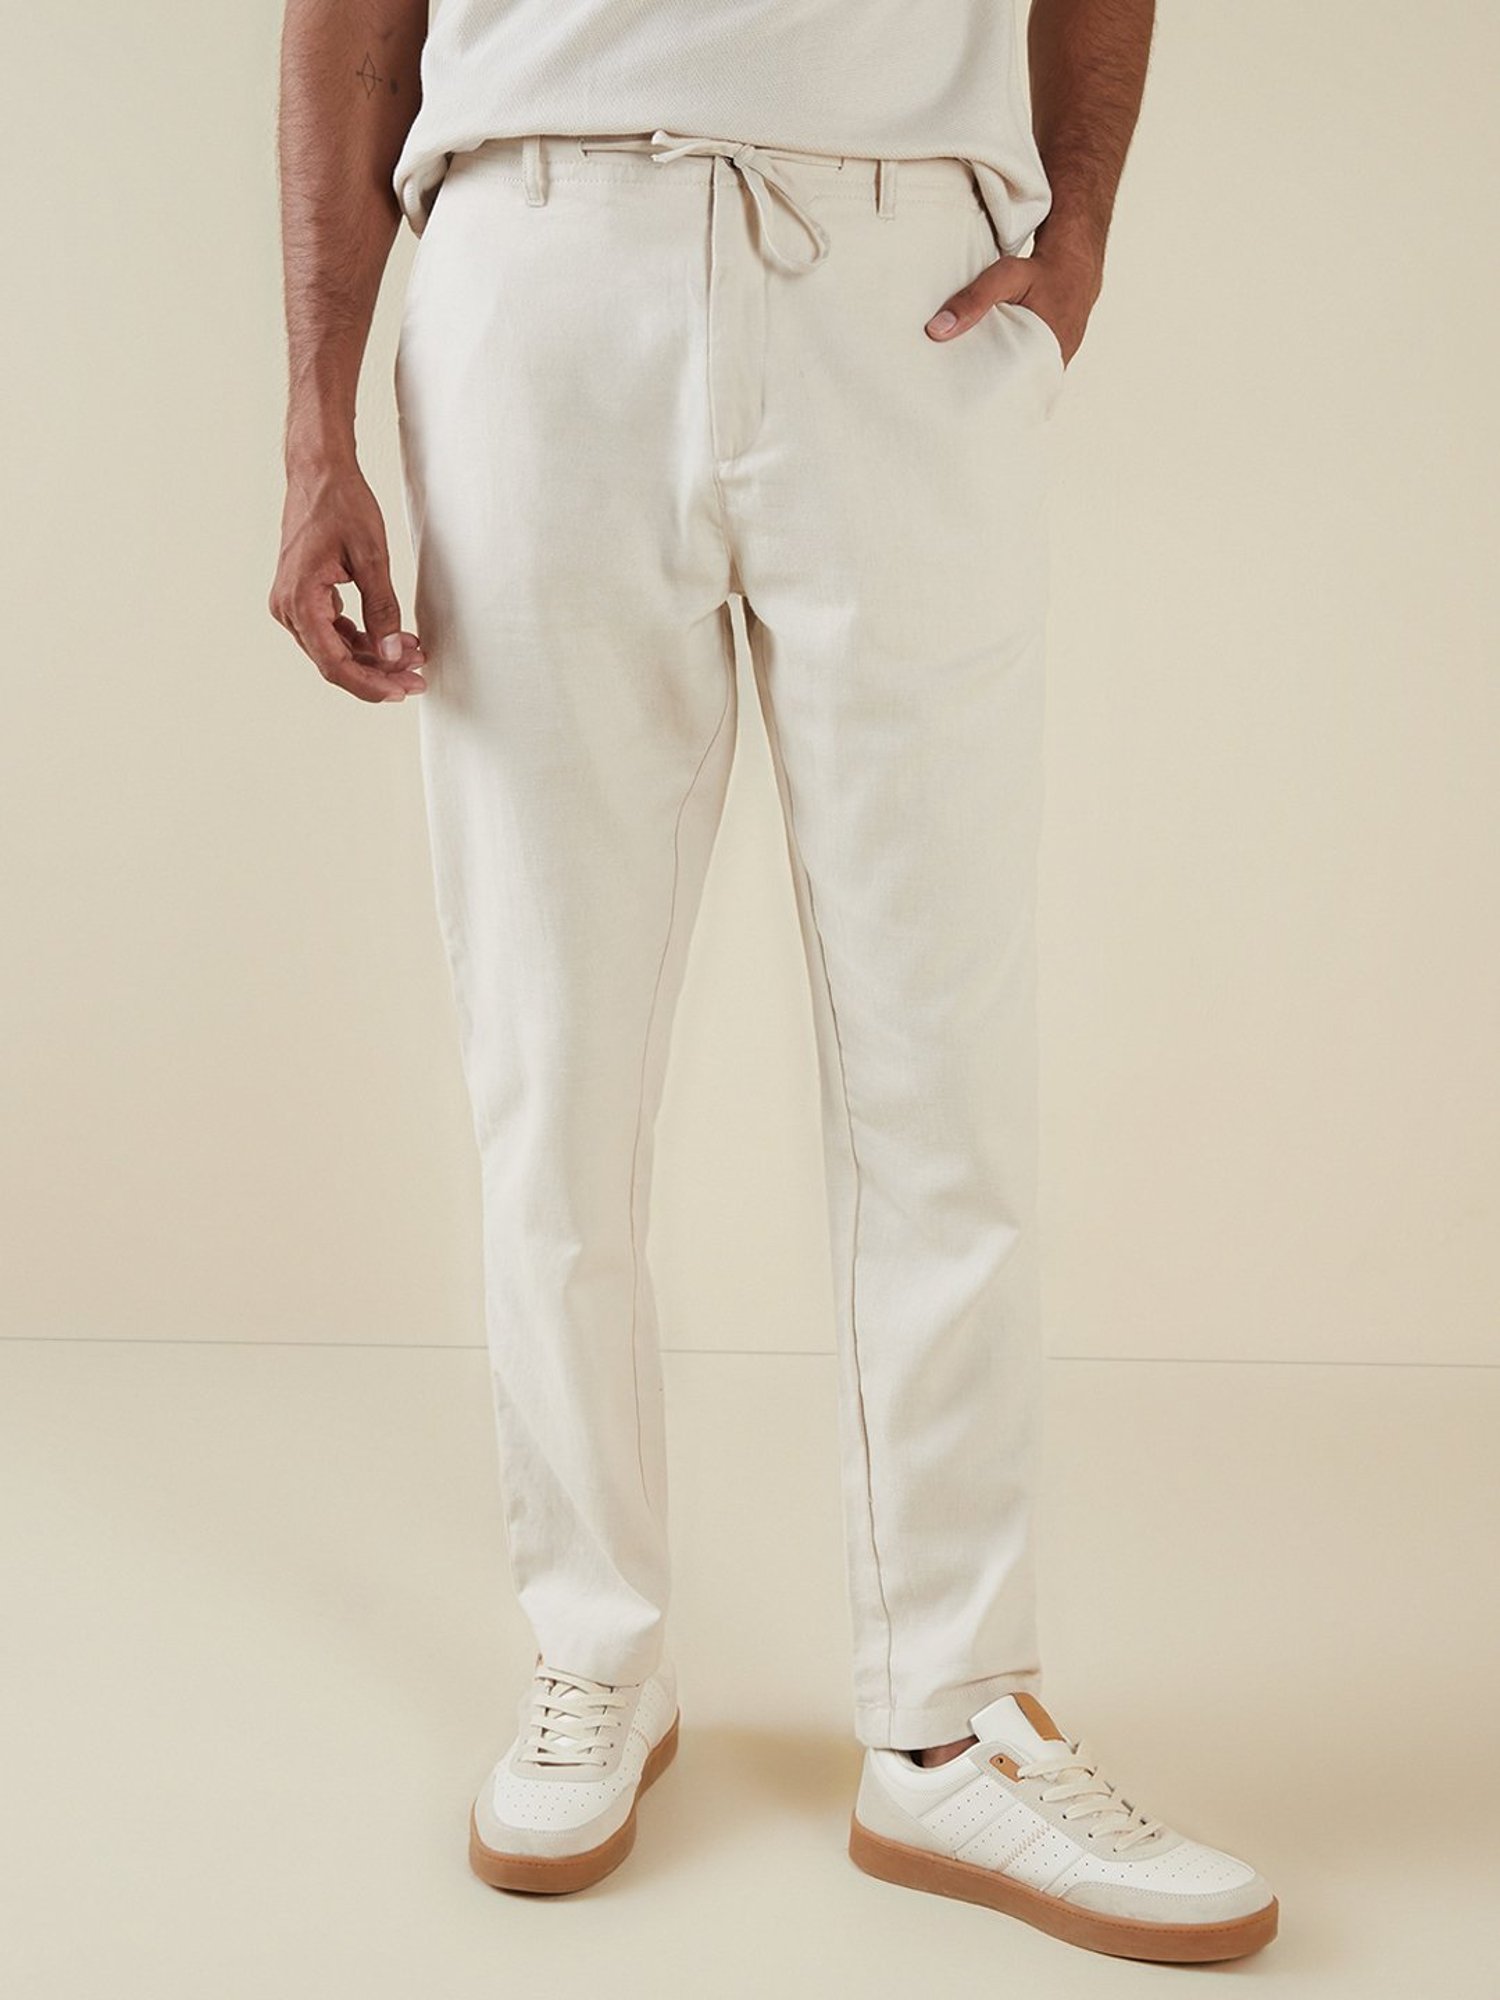 BESPOKE - White Pants for Men - 183122 - www.bespokemoda.com– BESPOKE MODA